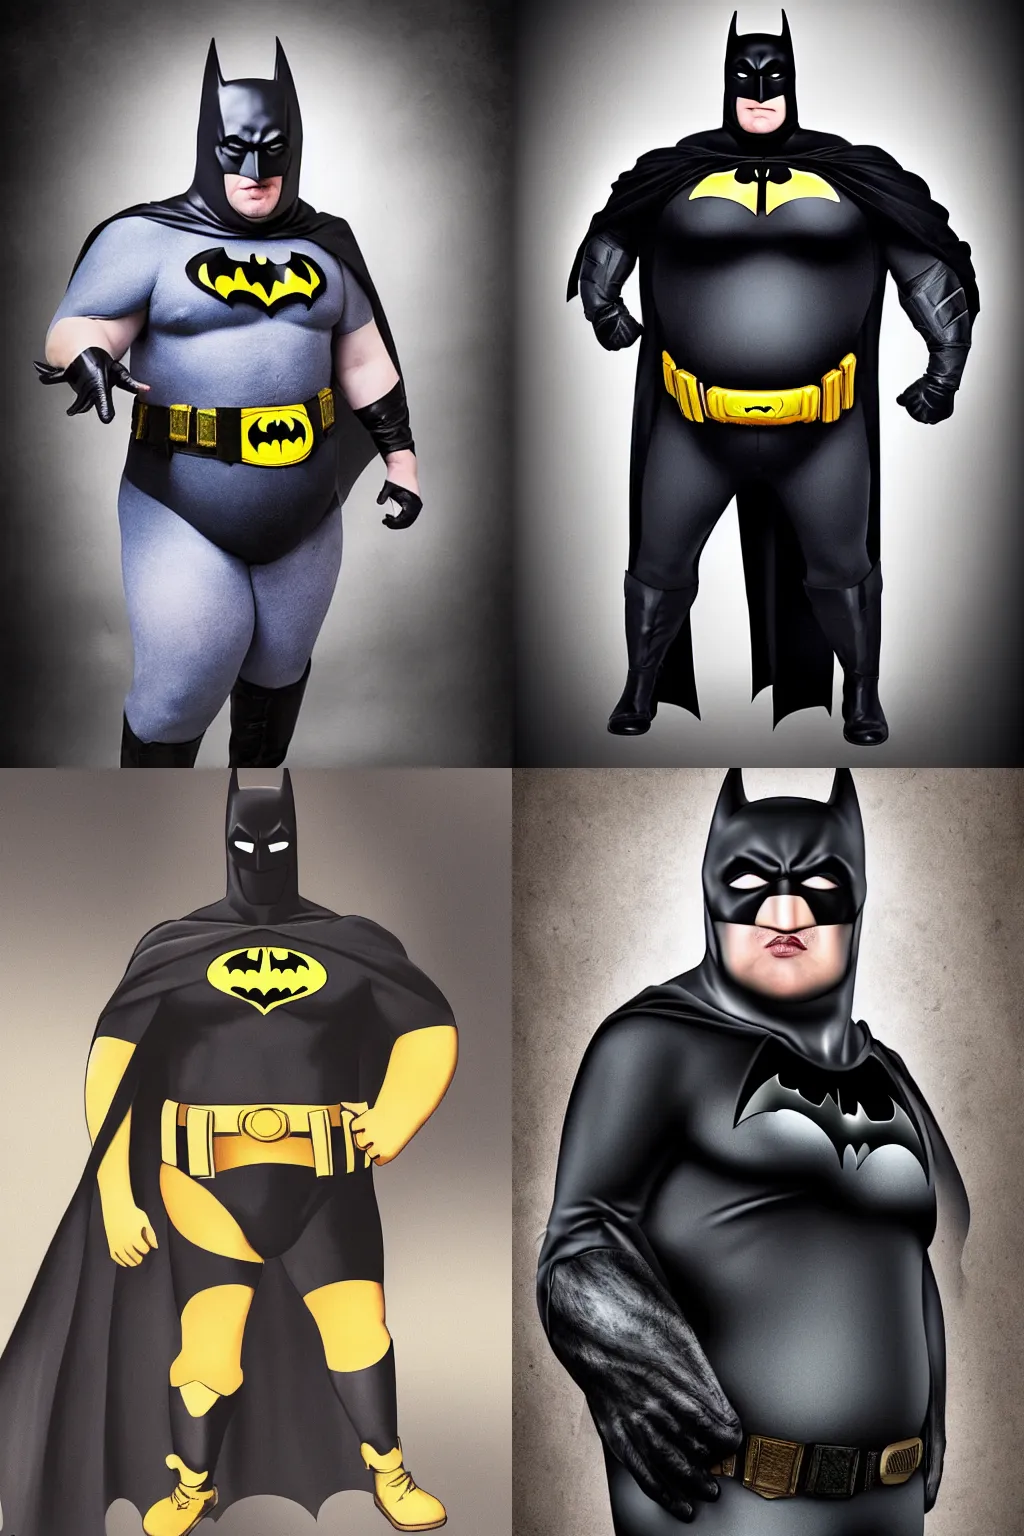 Prompt: fat batman, portrait, studio photography, photo real, photograph